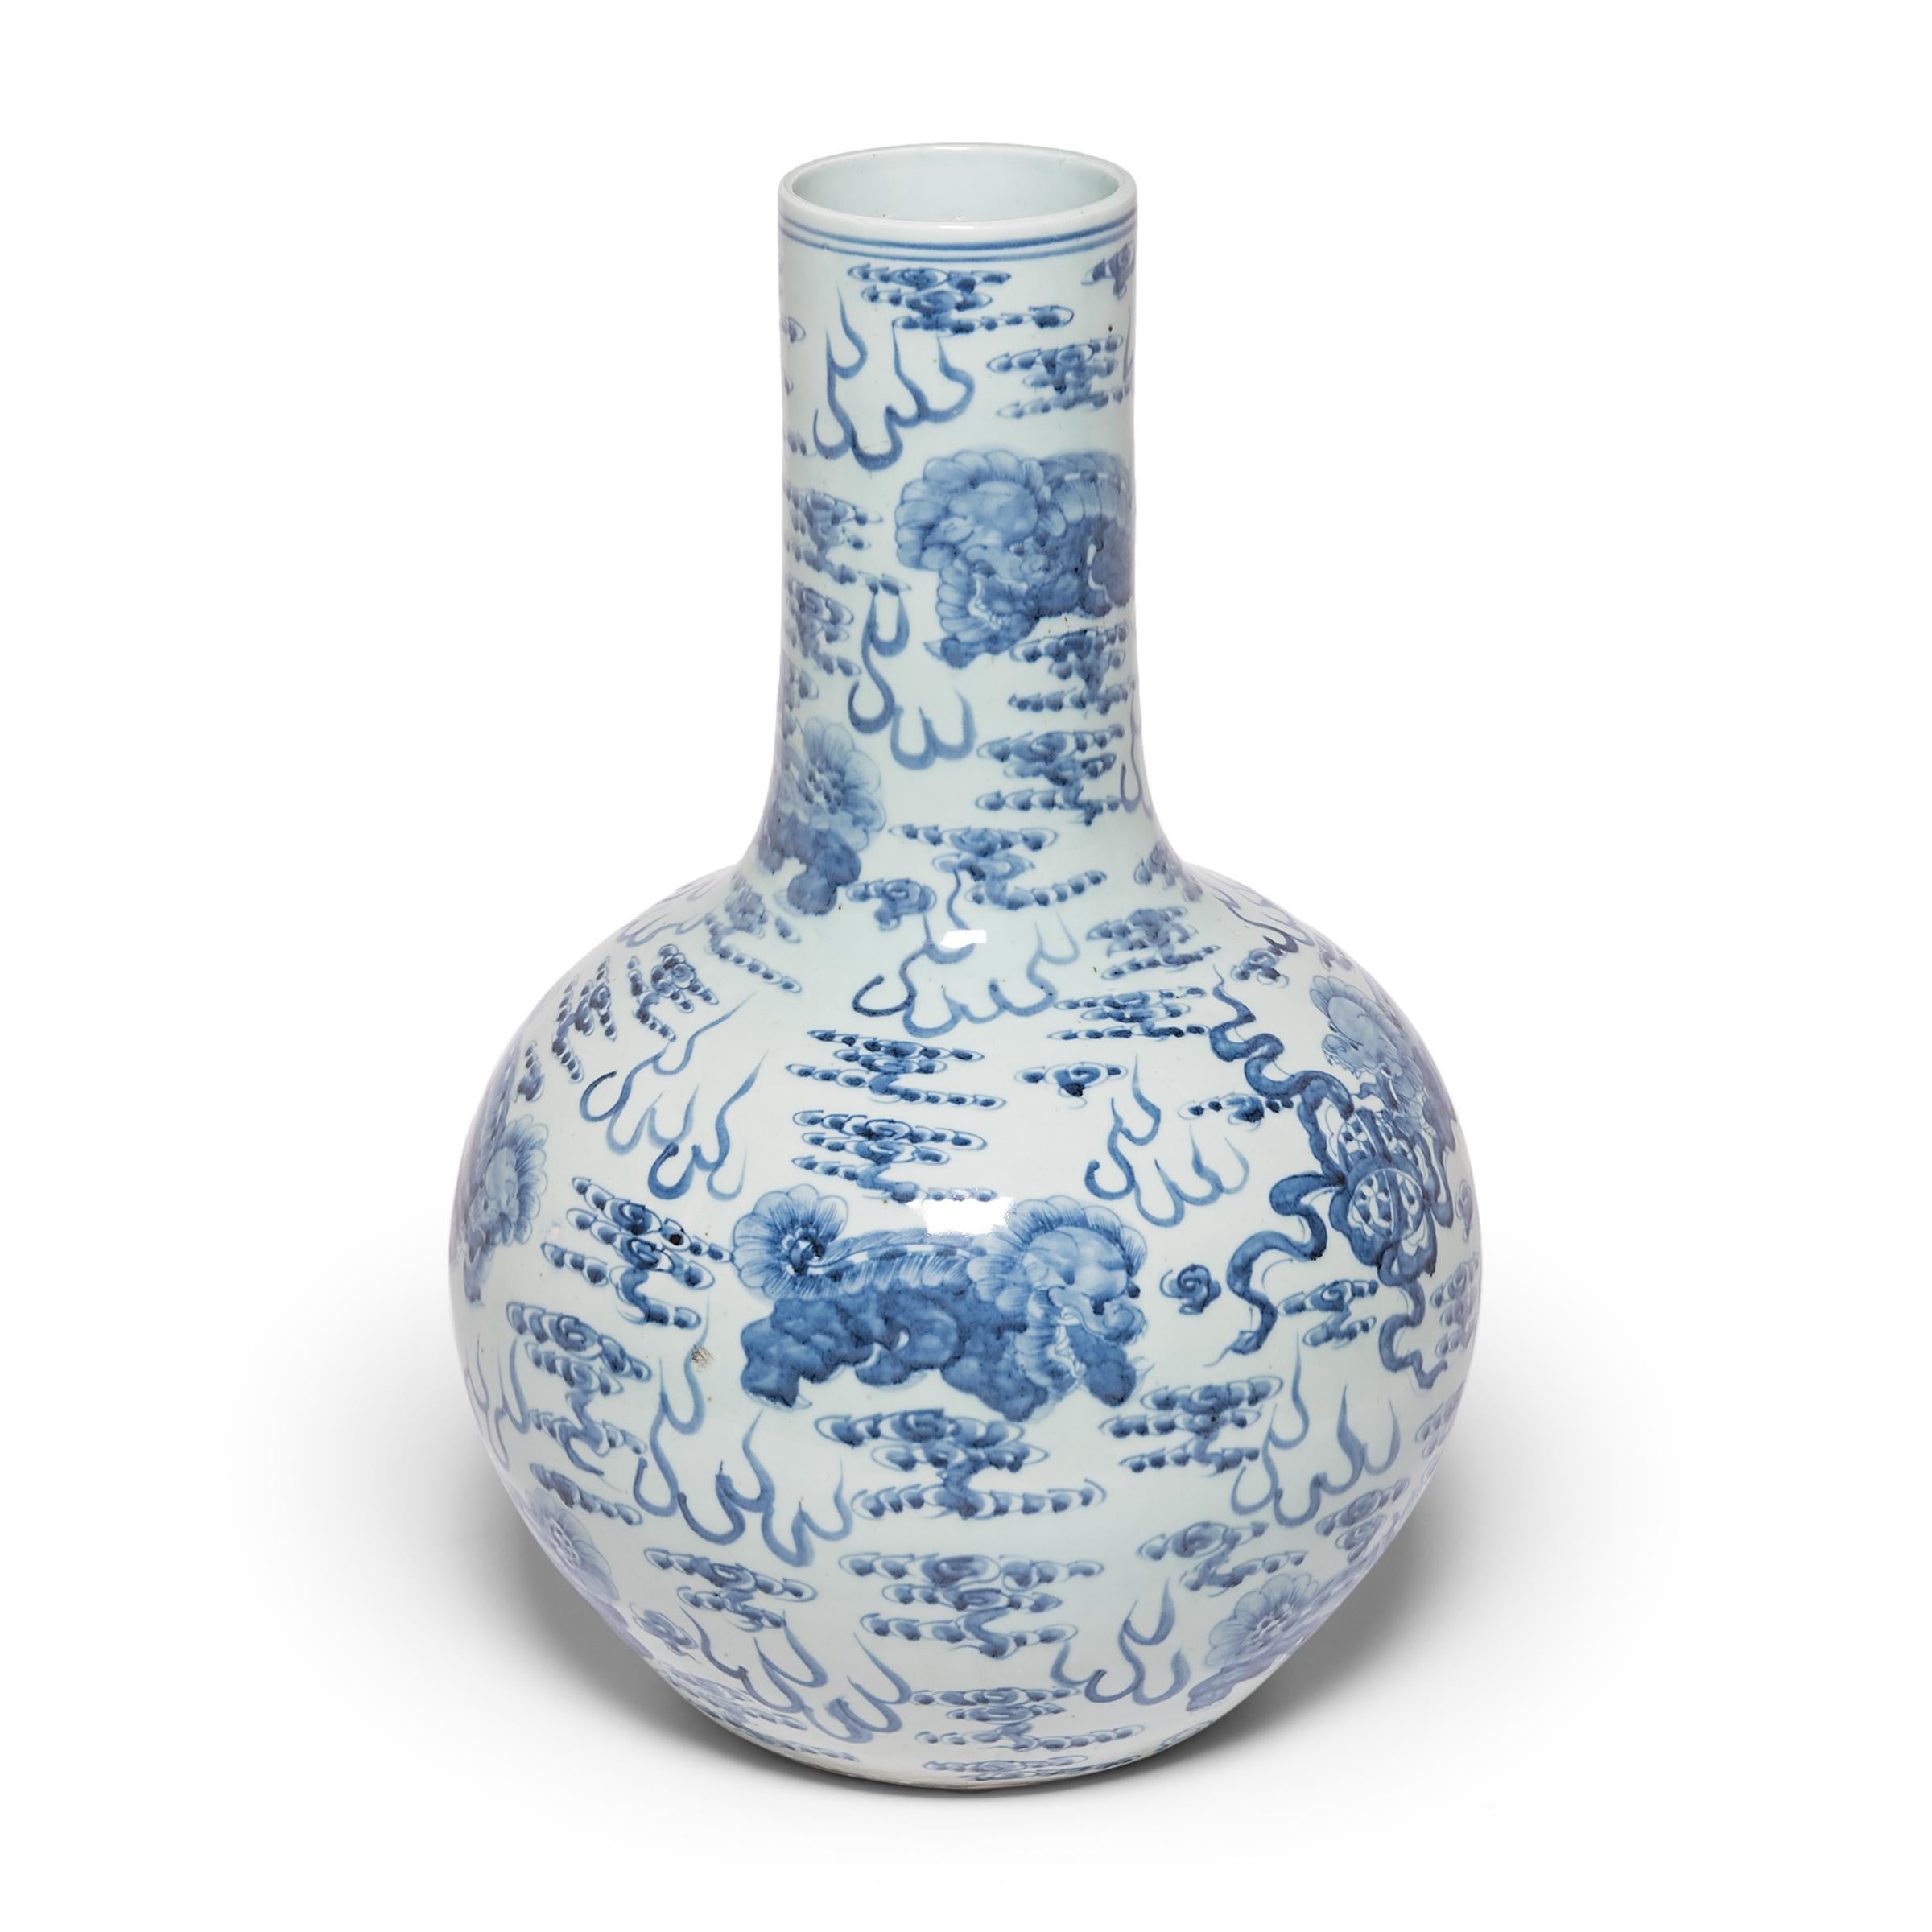 Magnifiquement réalisée avec un pinceau expressif, la décoration peinte de cette monumentale jarre globulaire témoigne de l'art exceptionnel de la porcelaine chinoise bleu et blanc. Les chiens-lions Guardian Fu flottent au milieu des nuages